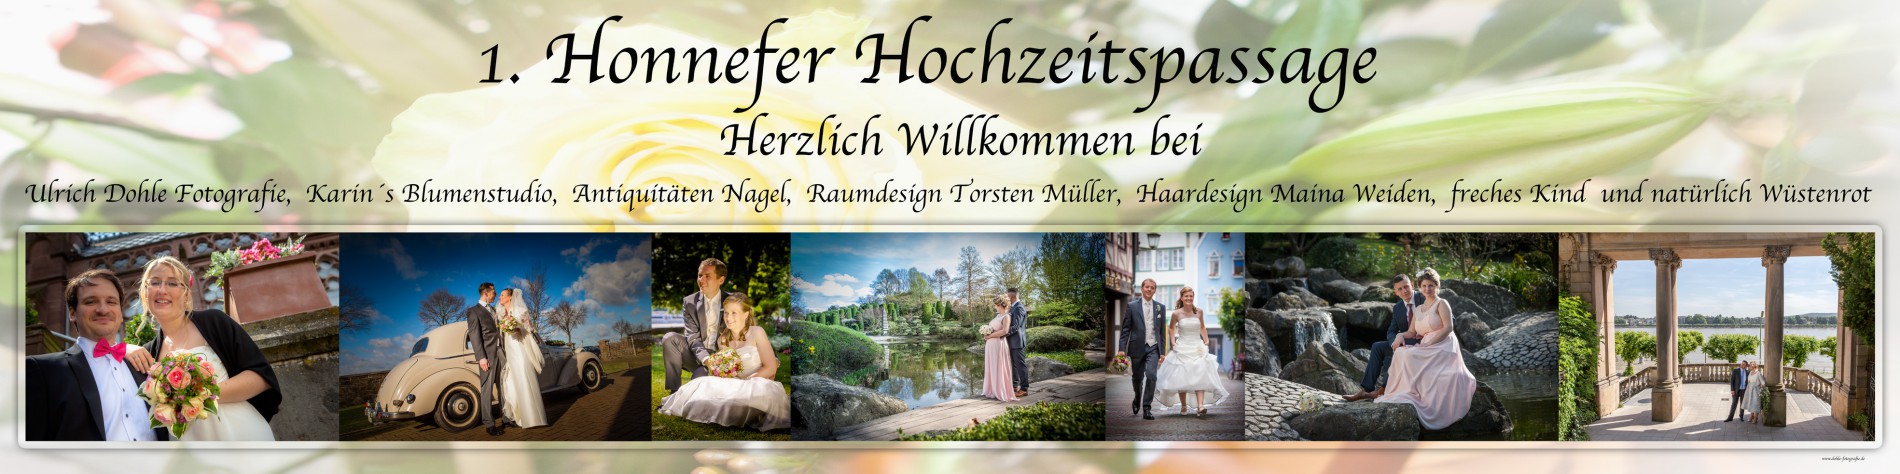 1. Bad Honnefer Hochzeitspassage